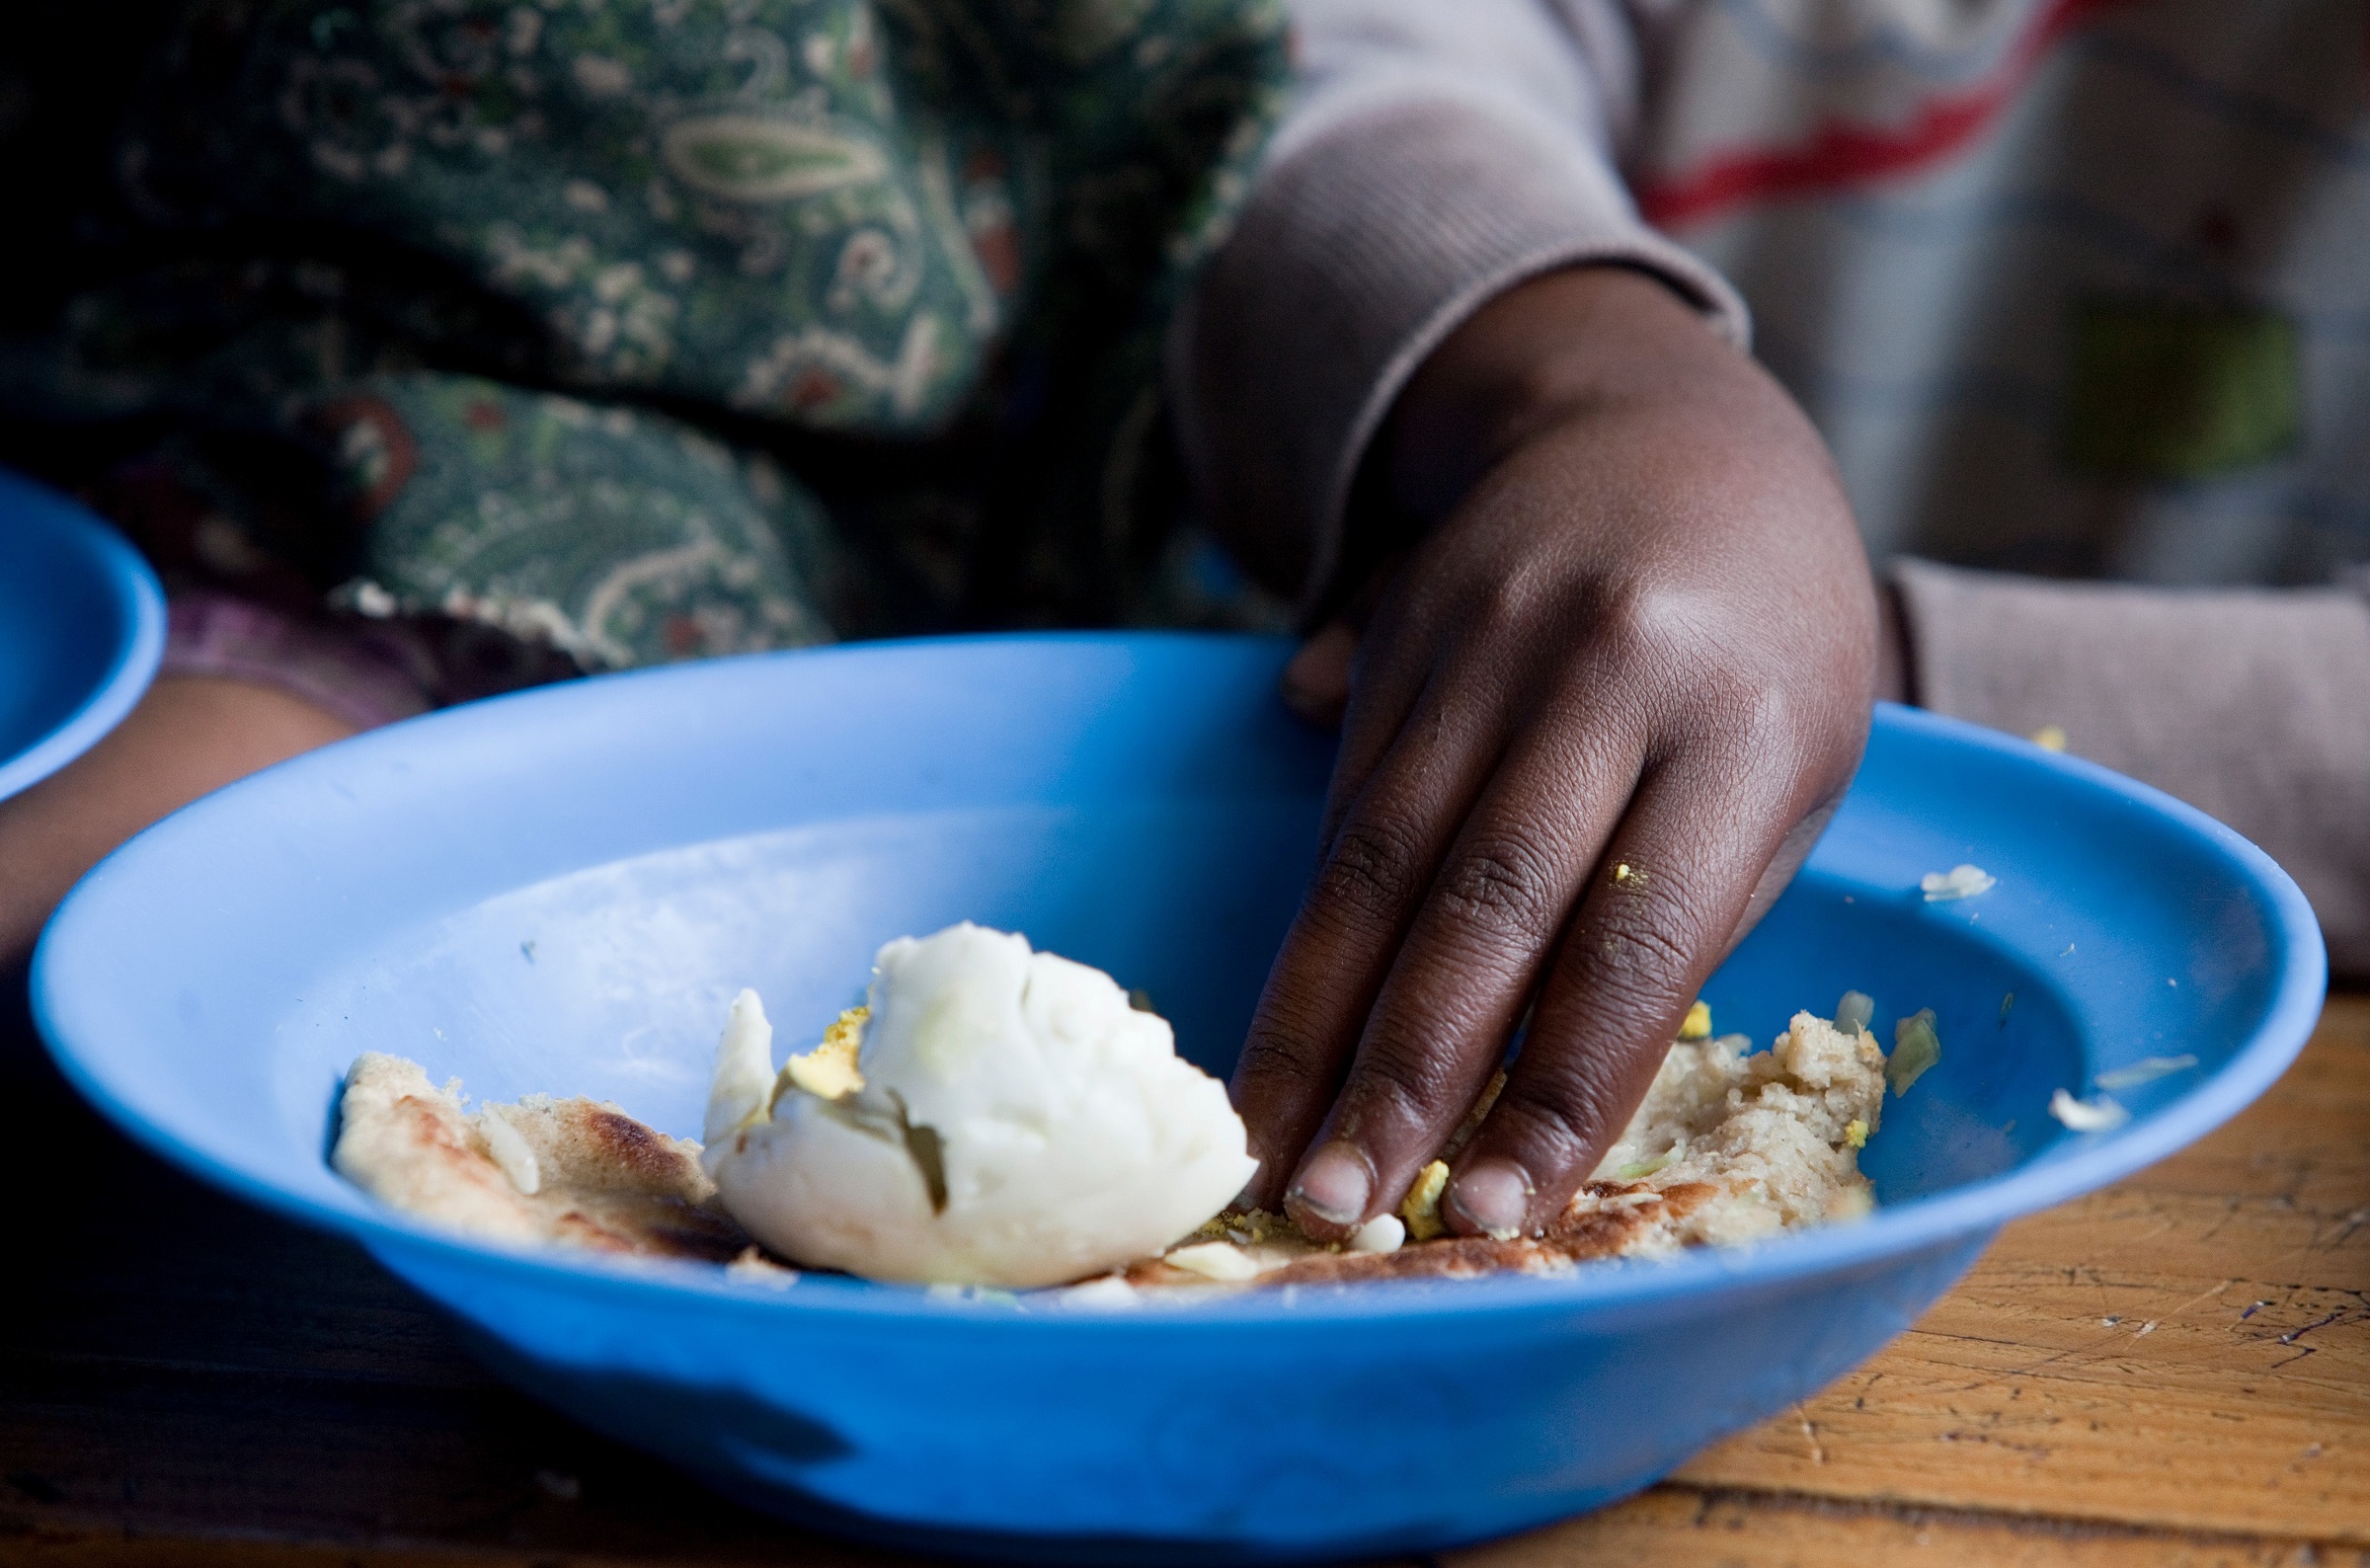 Ręka dziecka zbierająca jedzenie z głębokiego talerza.